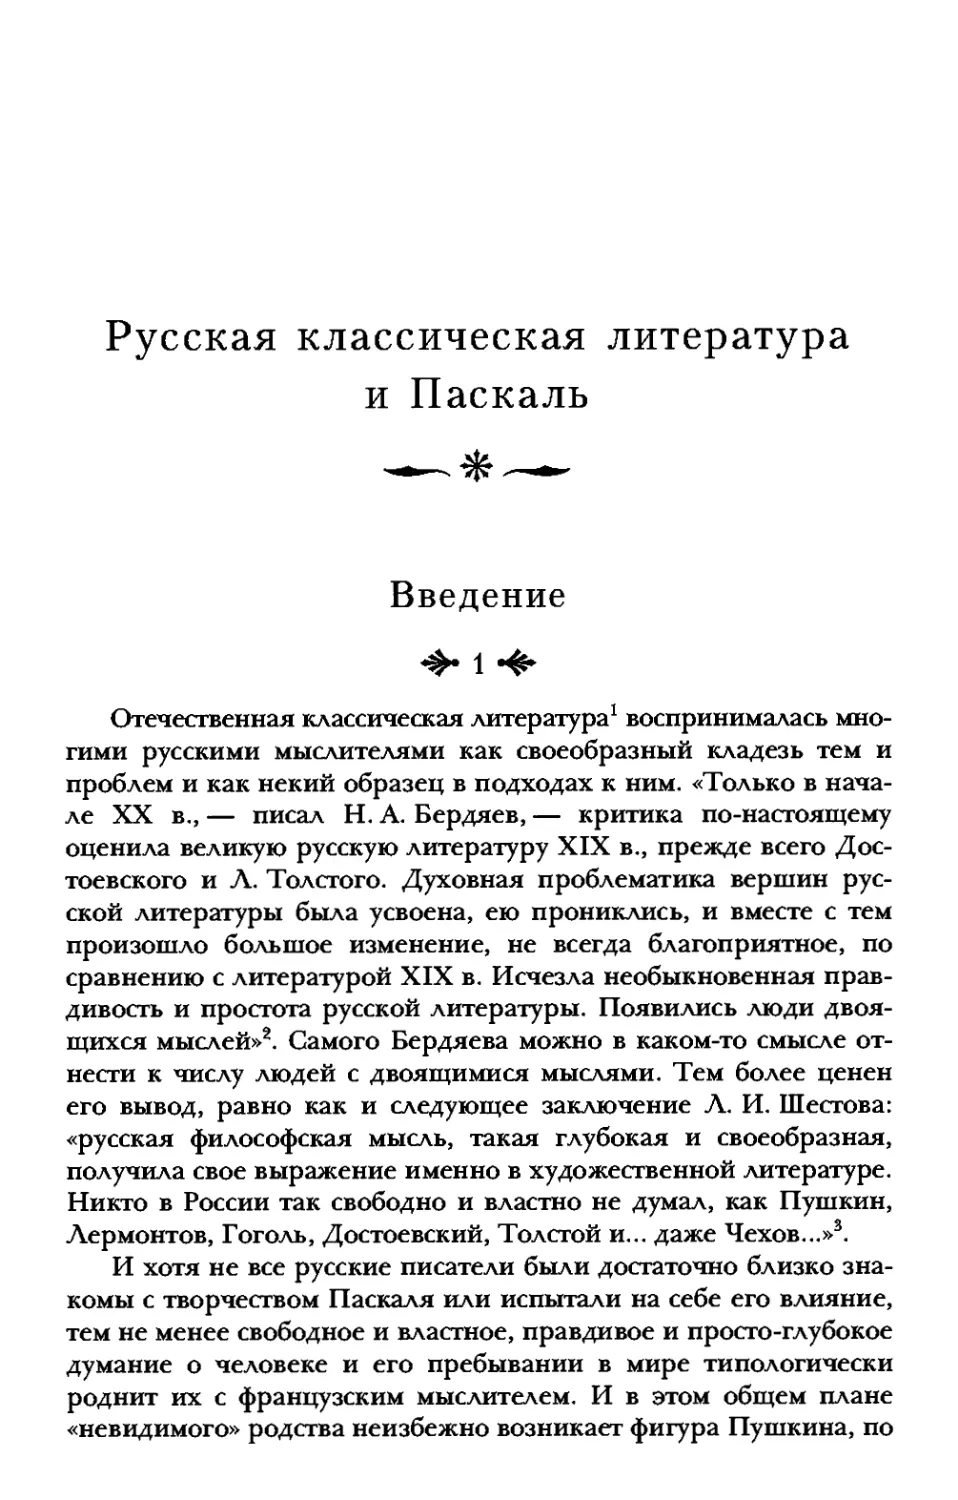 Русская классическая литература и Паскаль
Введение